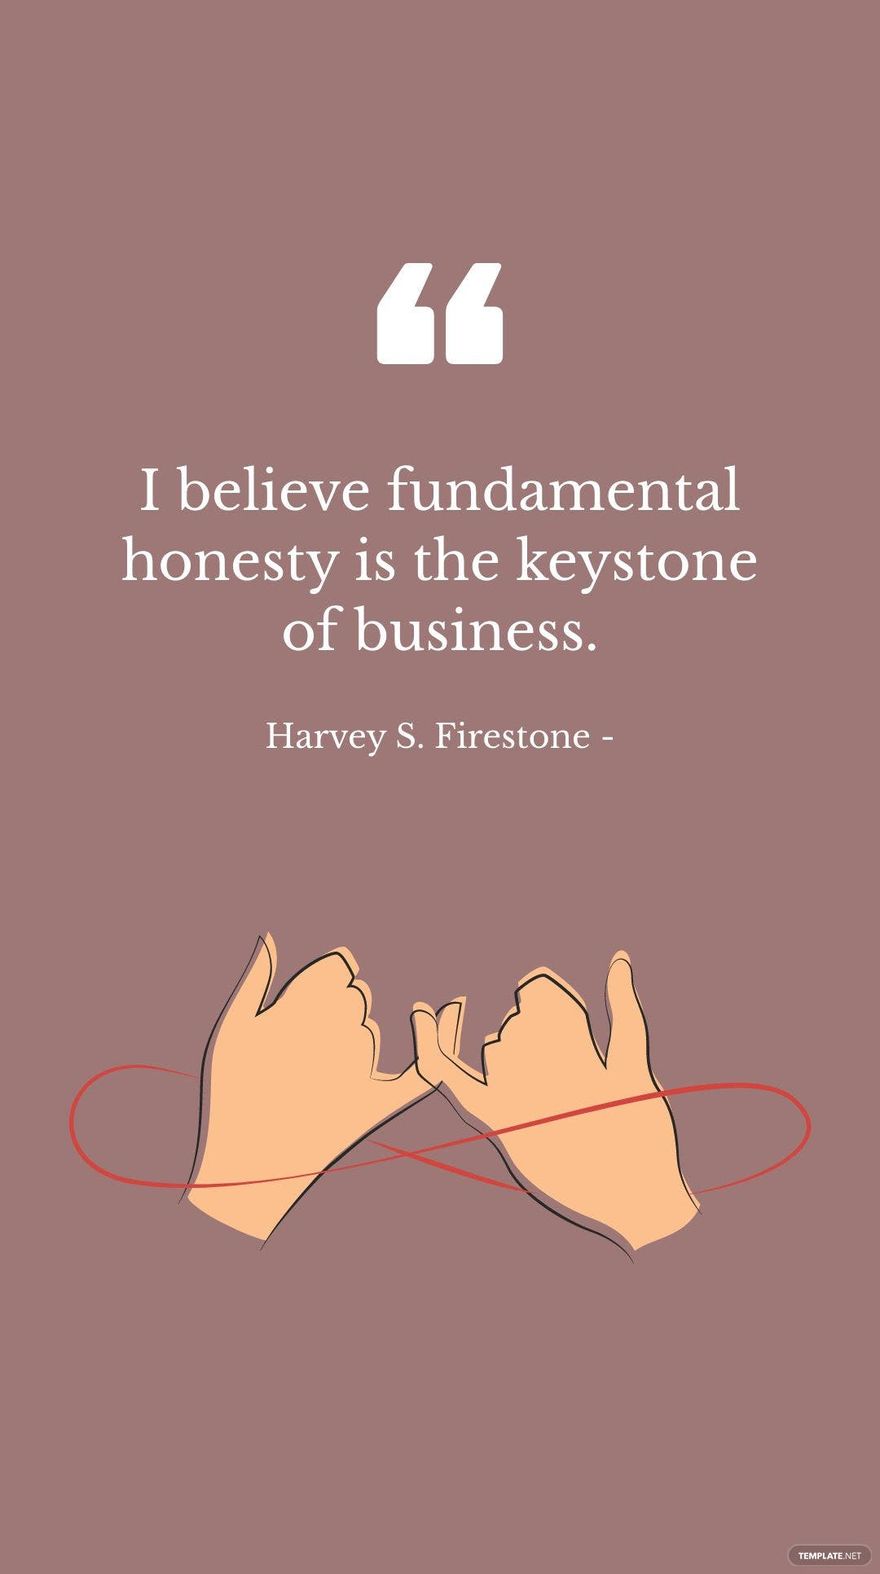 Harvey S. Firestone - I believe fundamental honesty is the keystone of business. in JPG